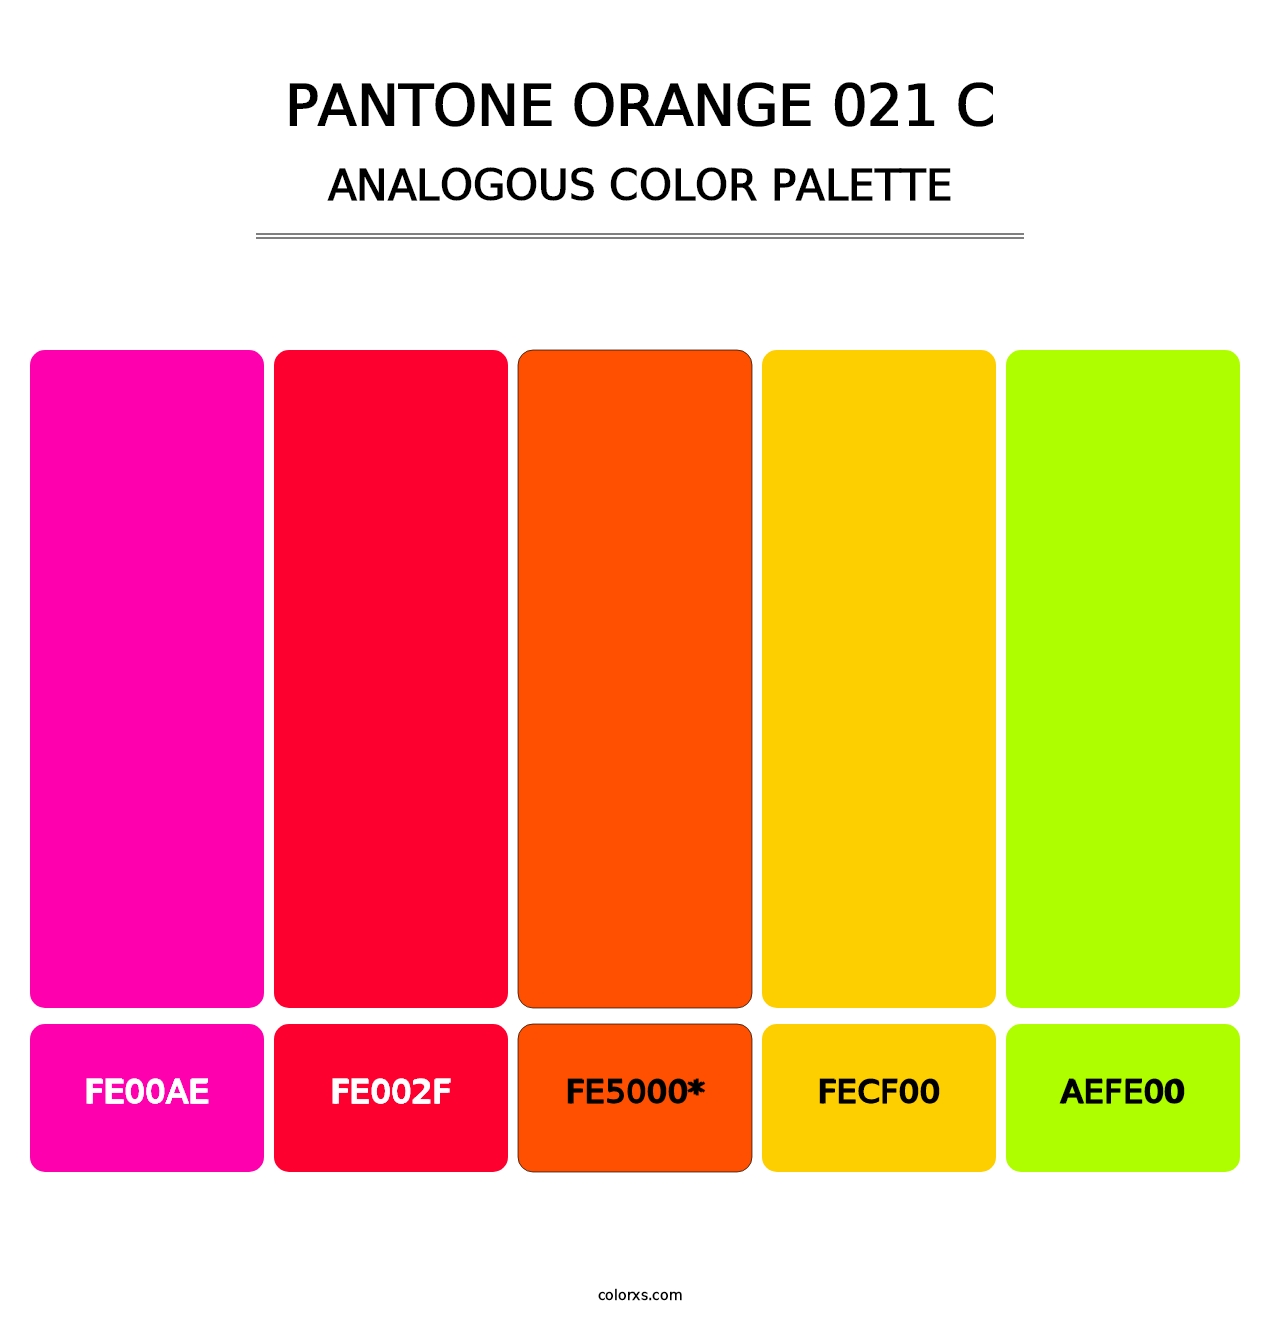 PANTONE Orange 021 C - Analogous Color Palette